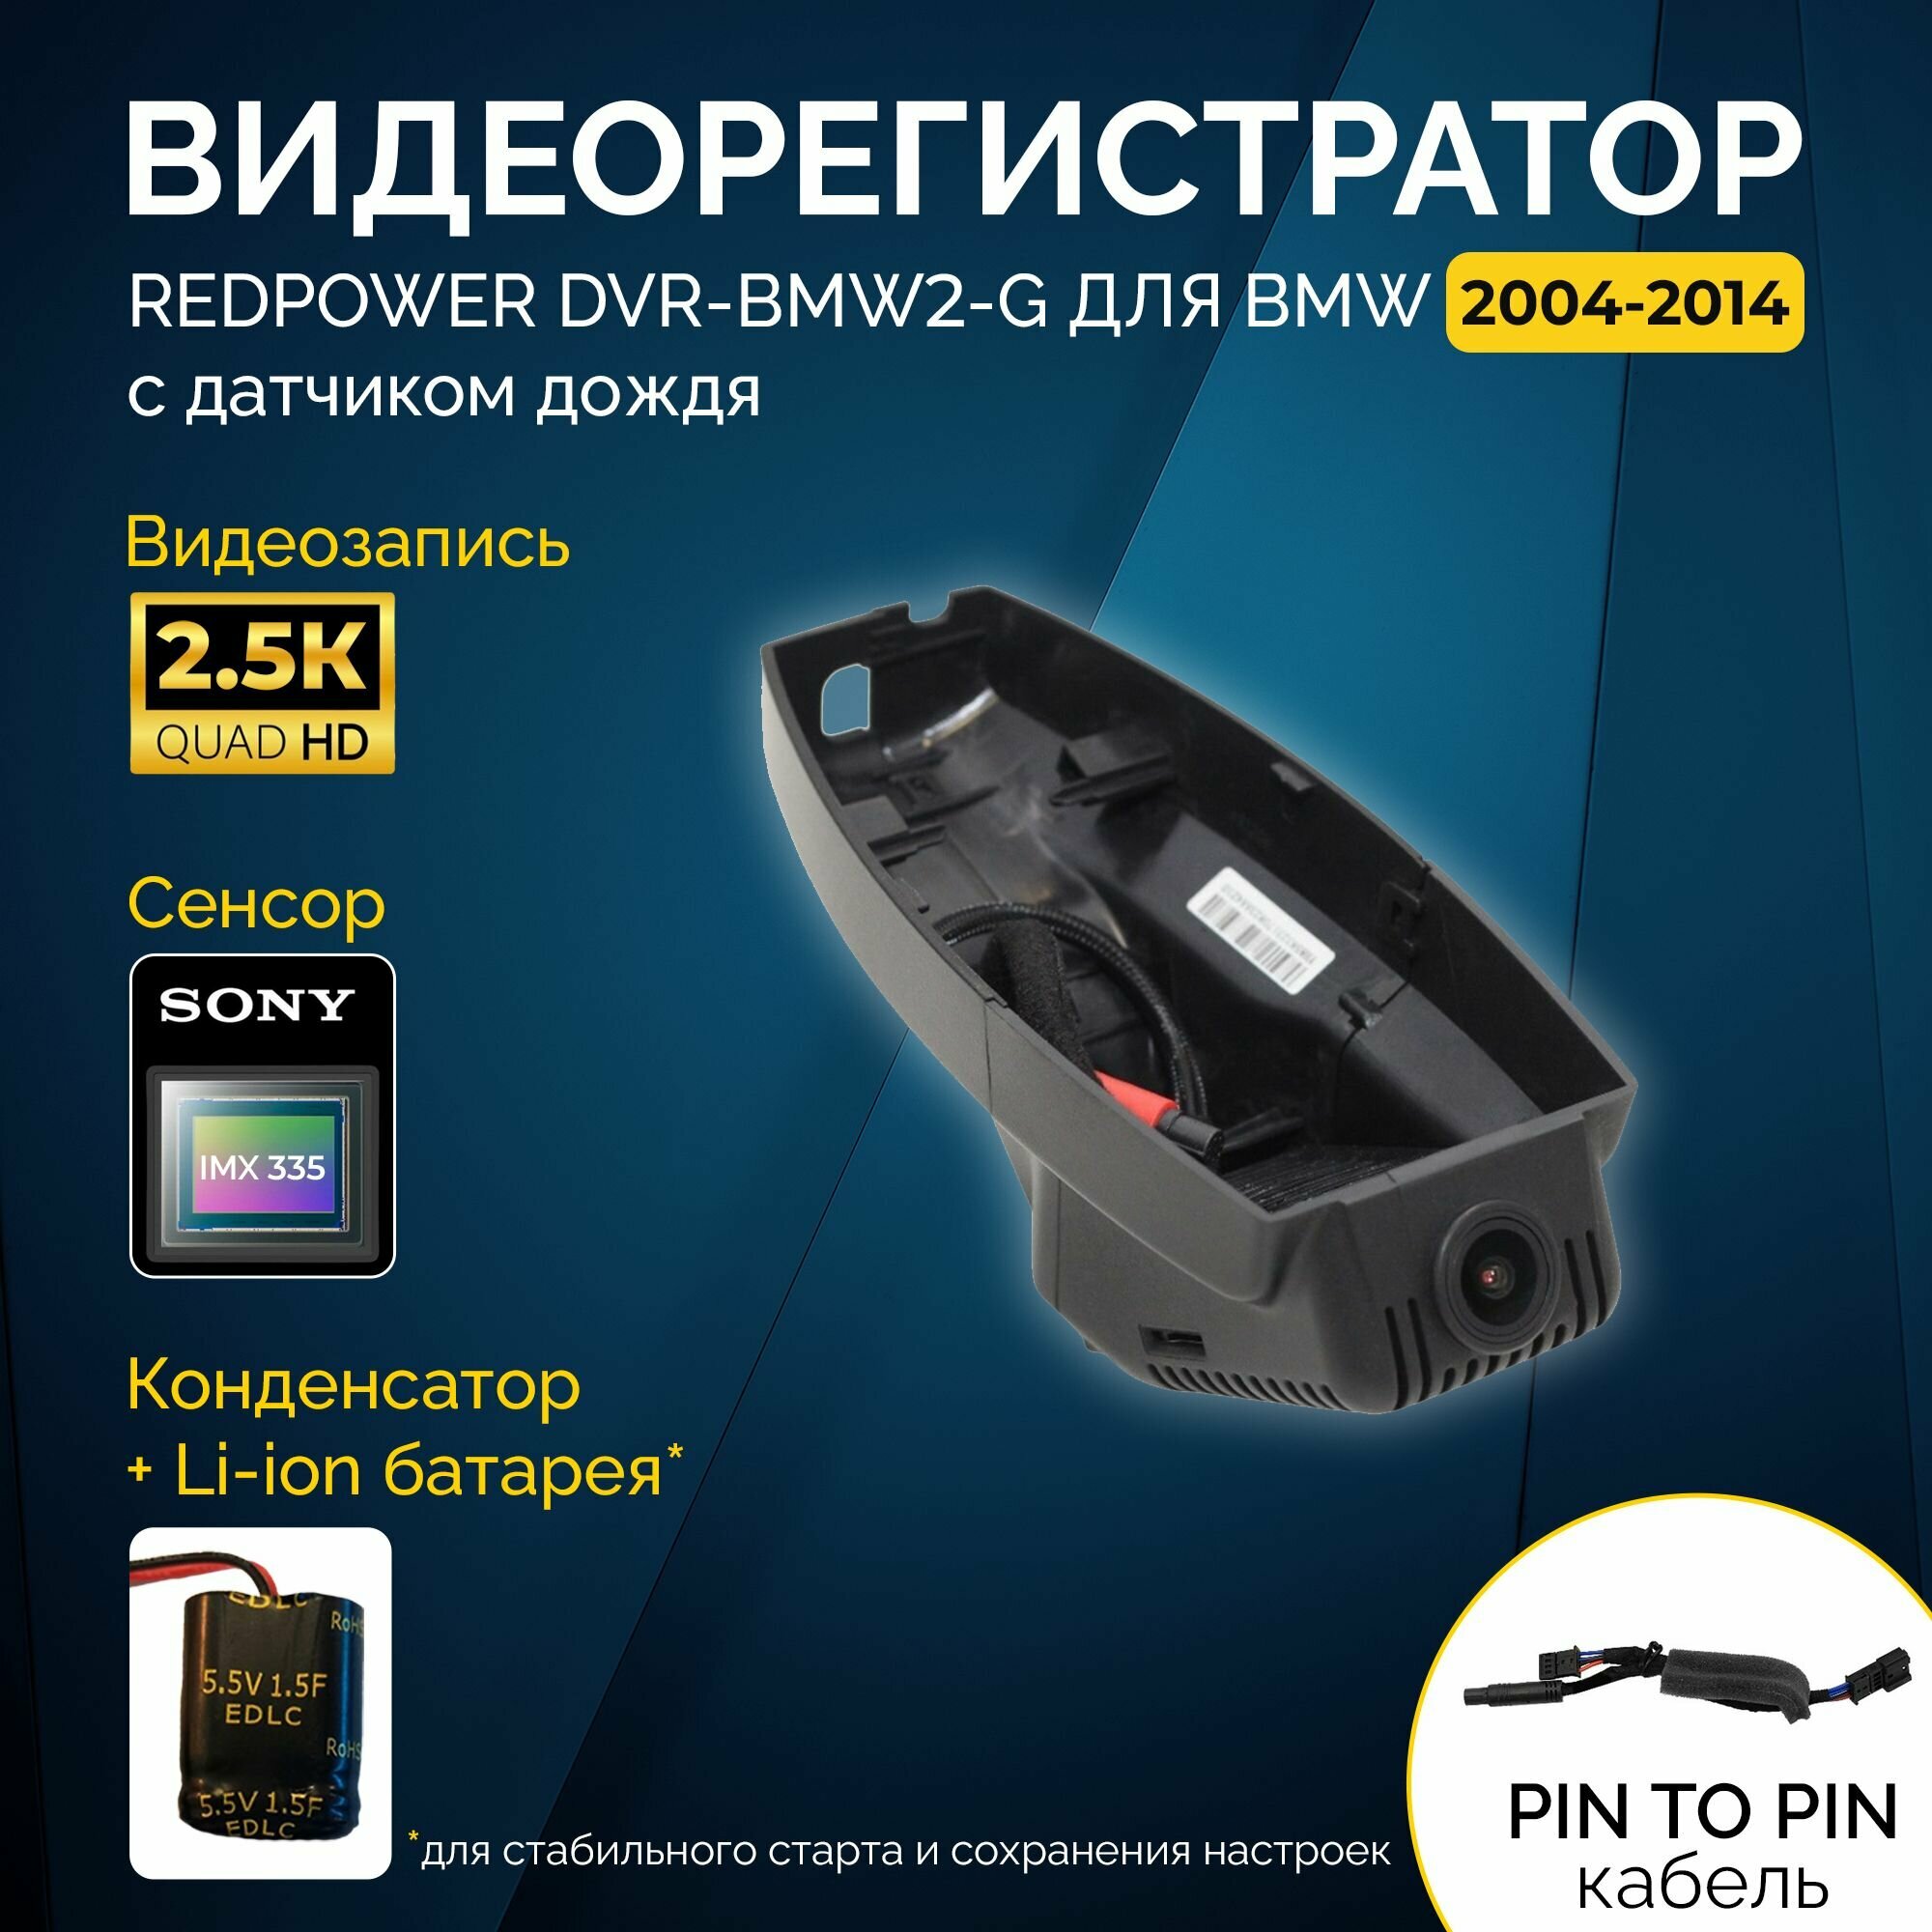 Штатный видеорегистратор RedPower DVR-BMW2-G для BMW (2004-2014)